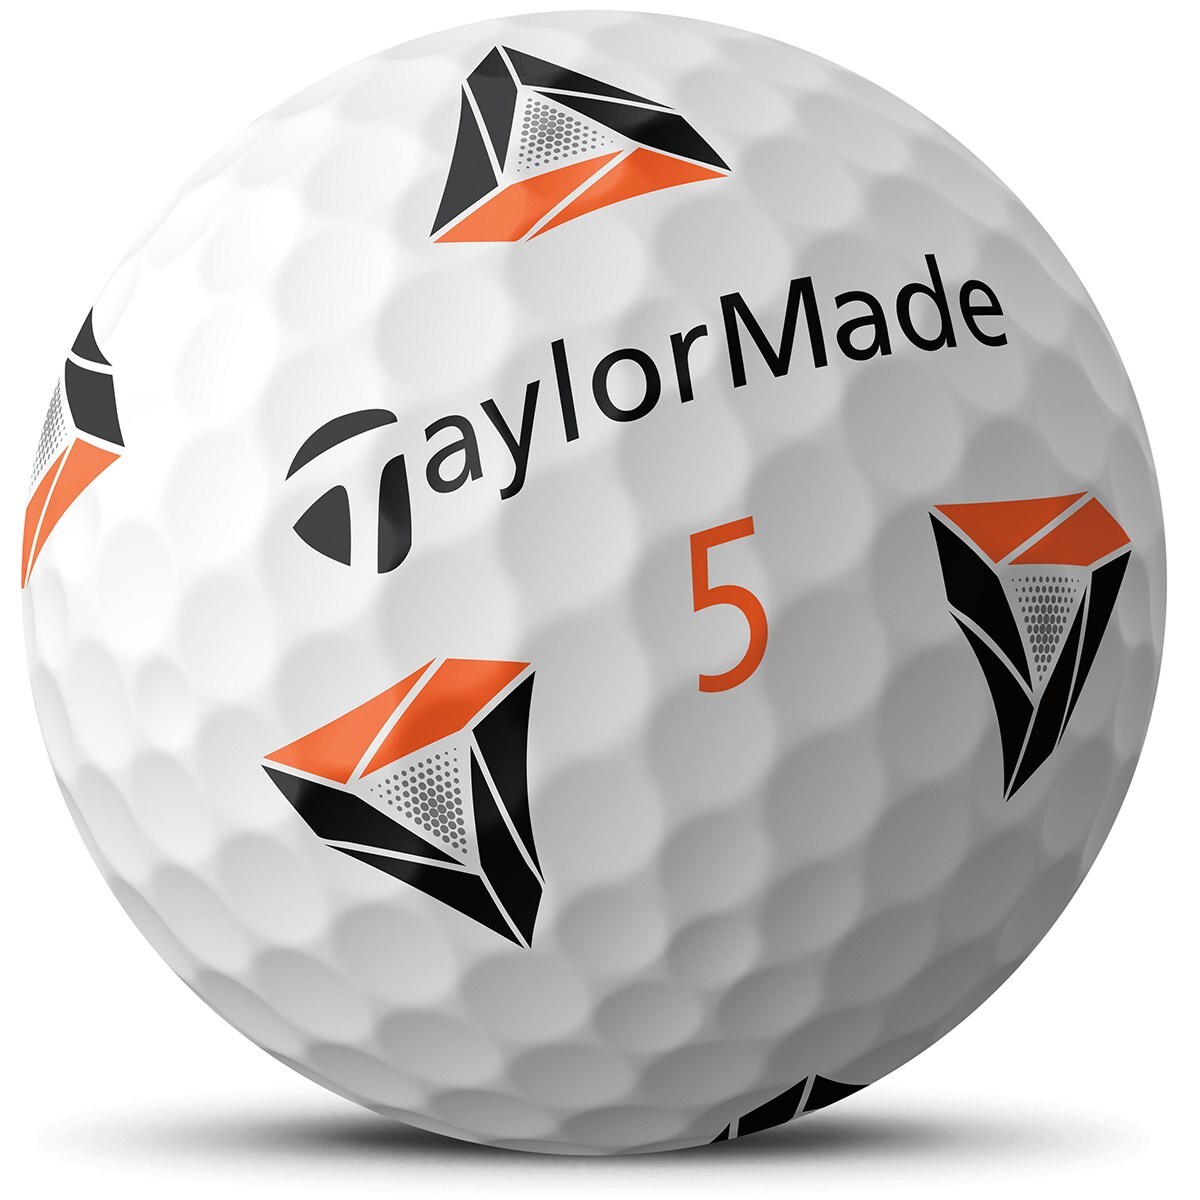 TP5x pix ボール(ボール（新品）)|TP5(テーラーメイド) の通販 - GDO 